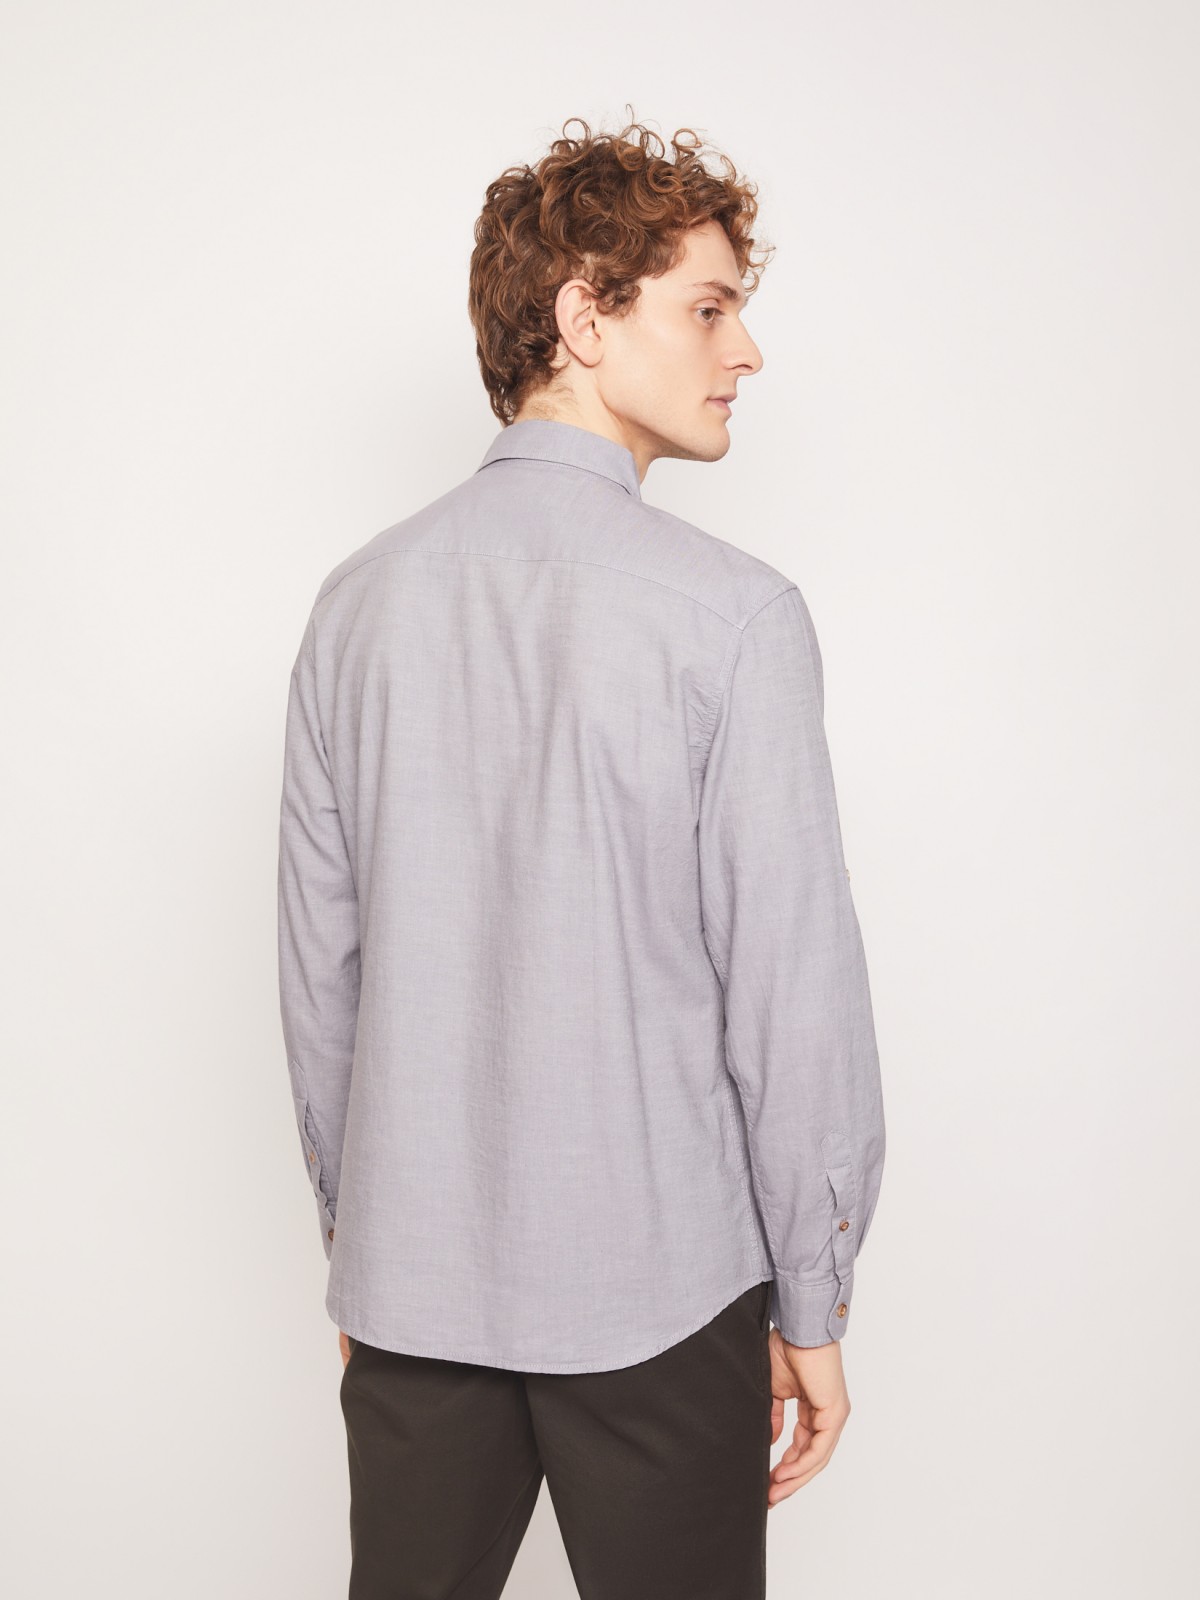 Хлопковая рубашка с накладными карманами zolla 211312162043, цвет серый, размер S - фото 6